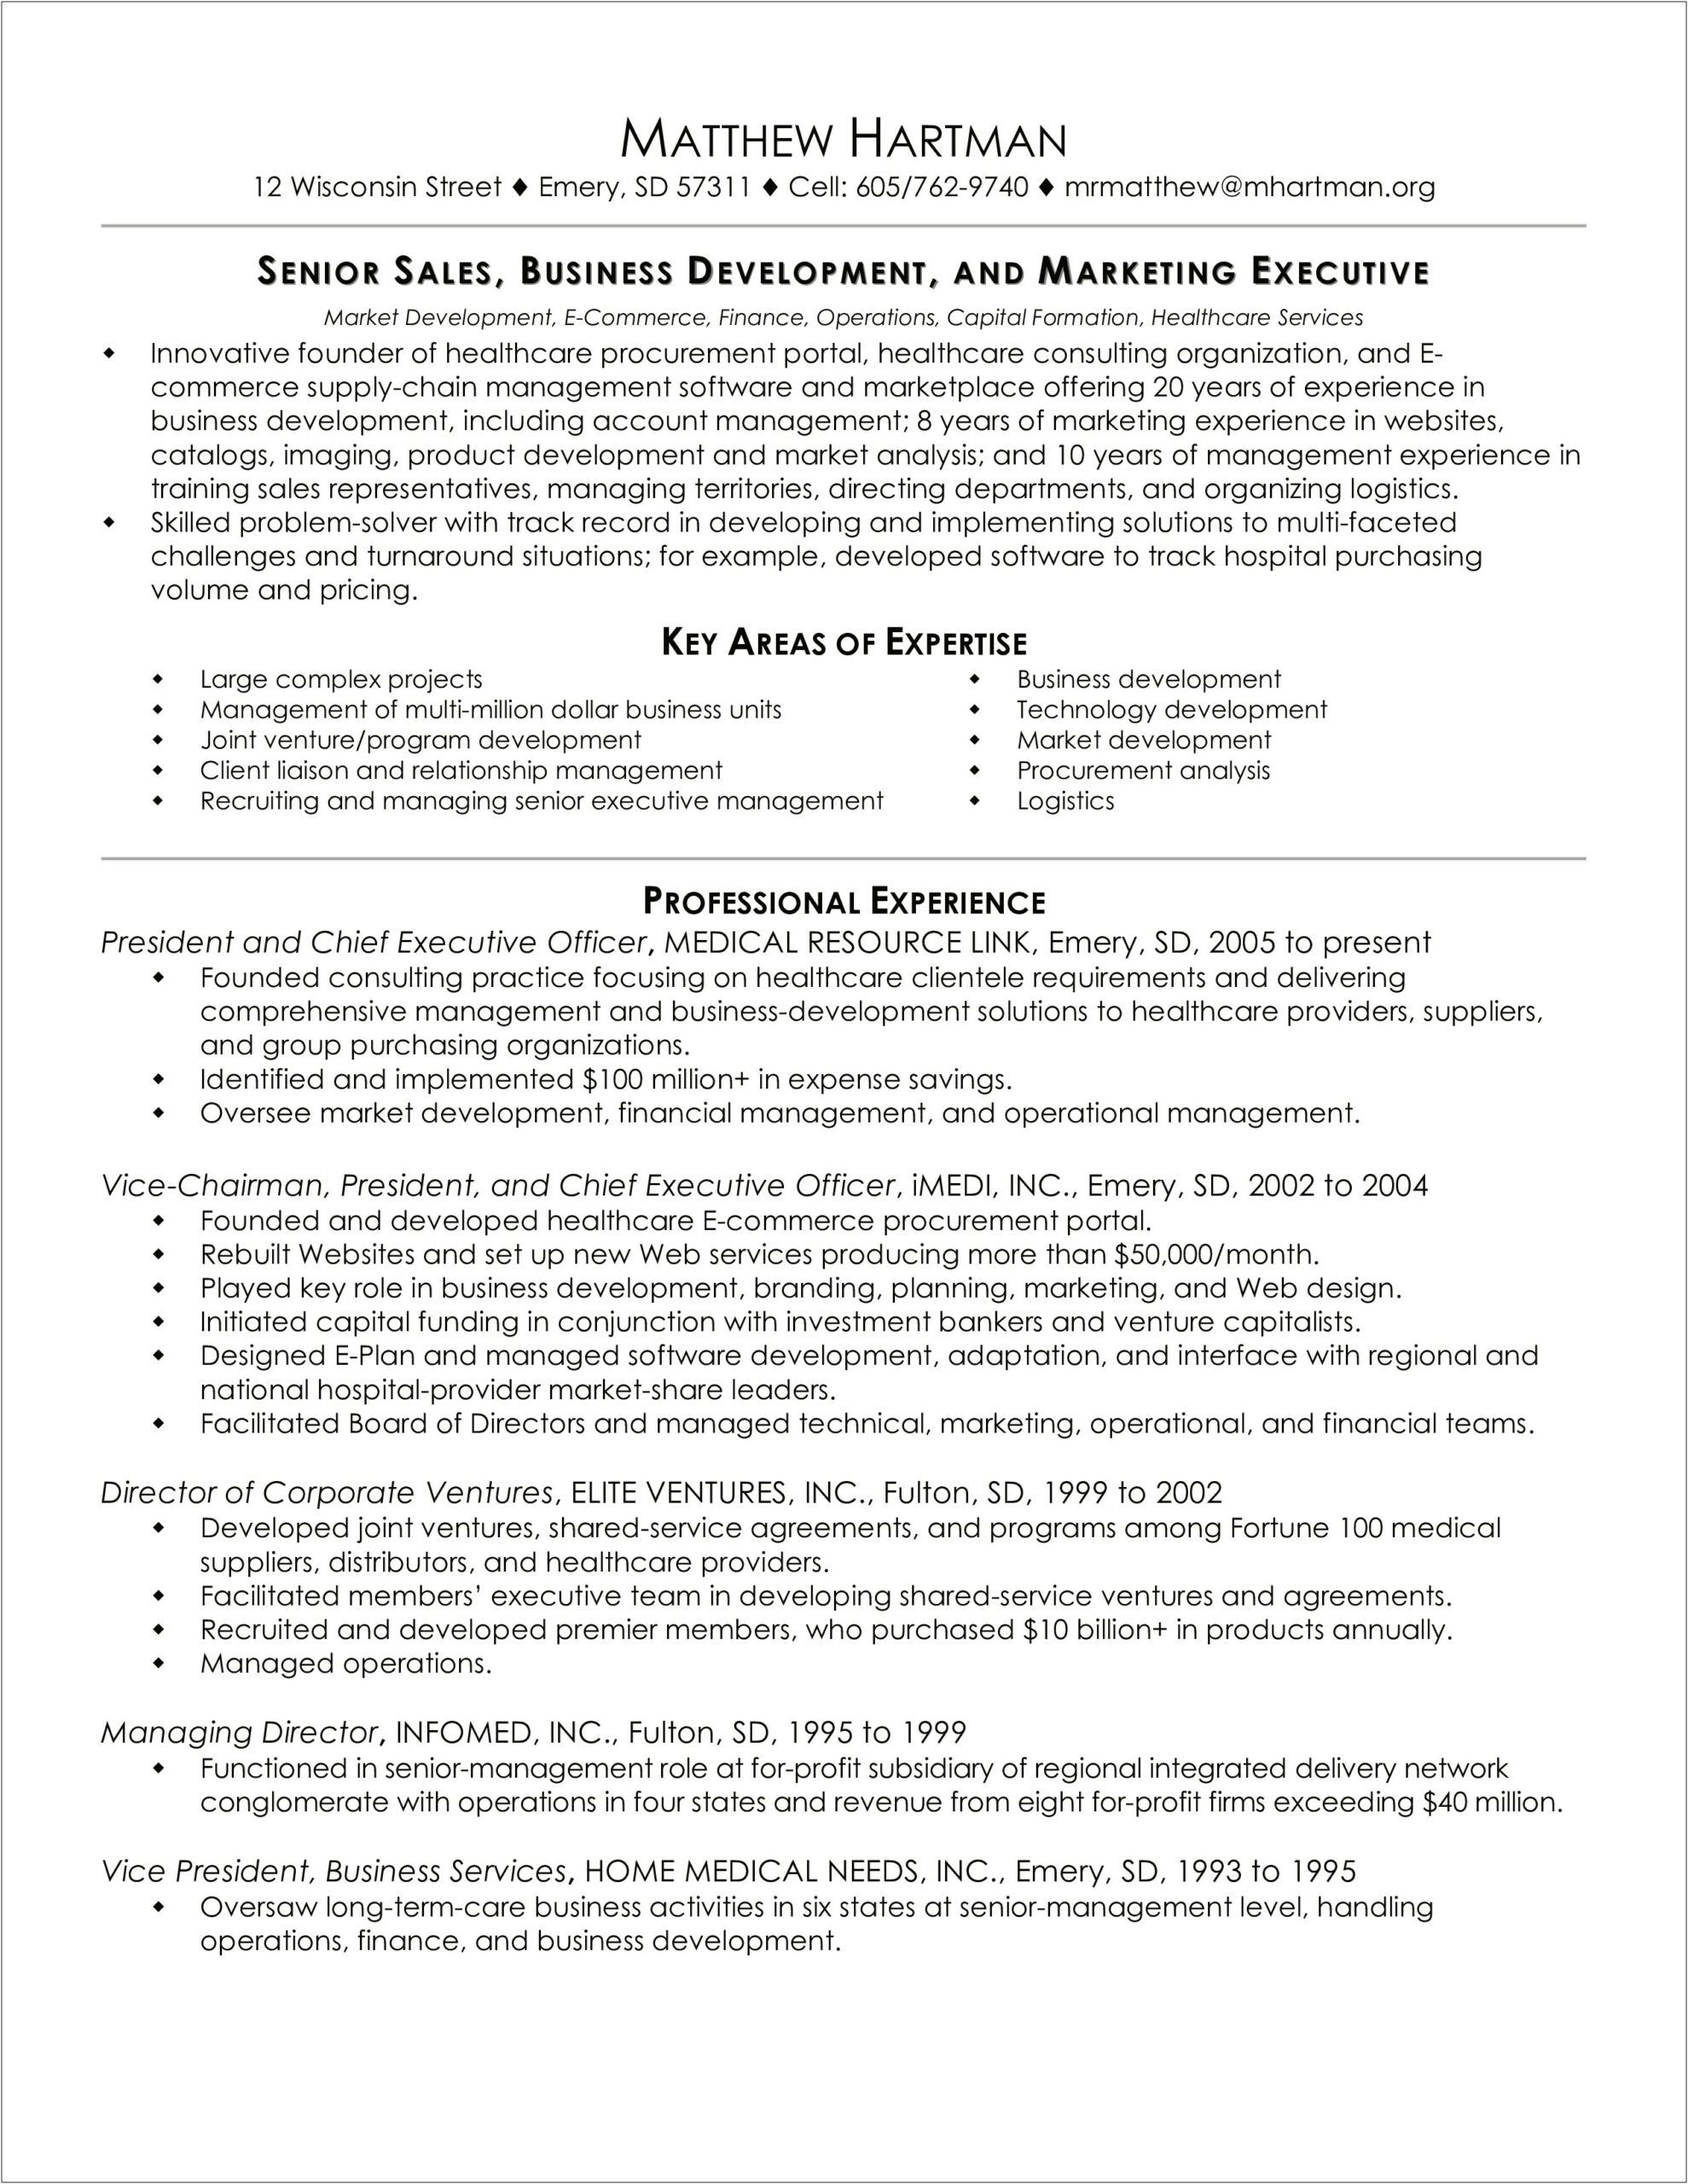 Sample Of Business Resume Letter